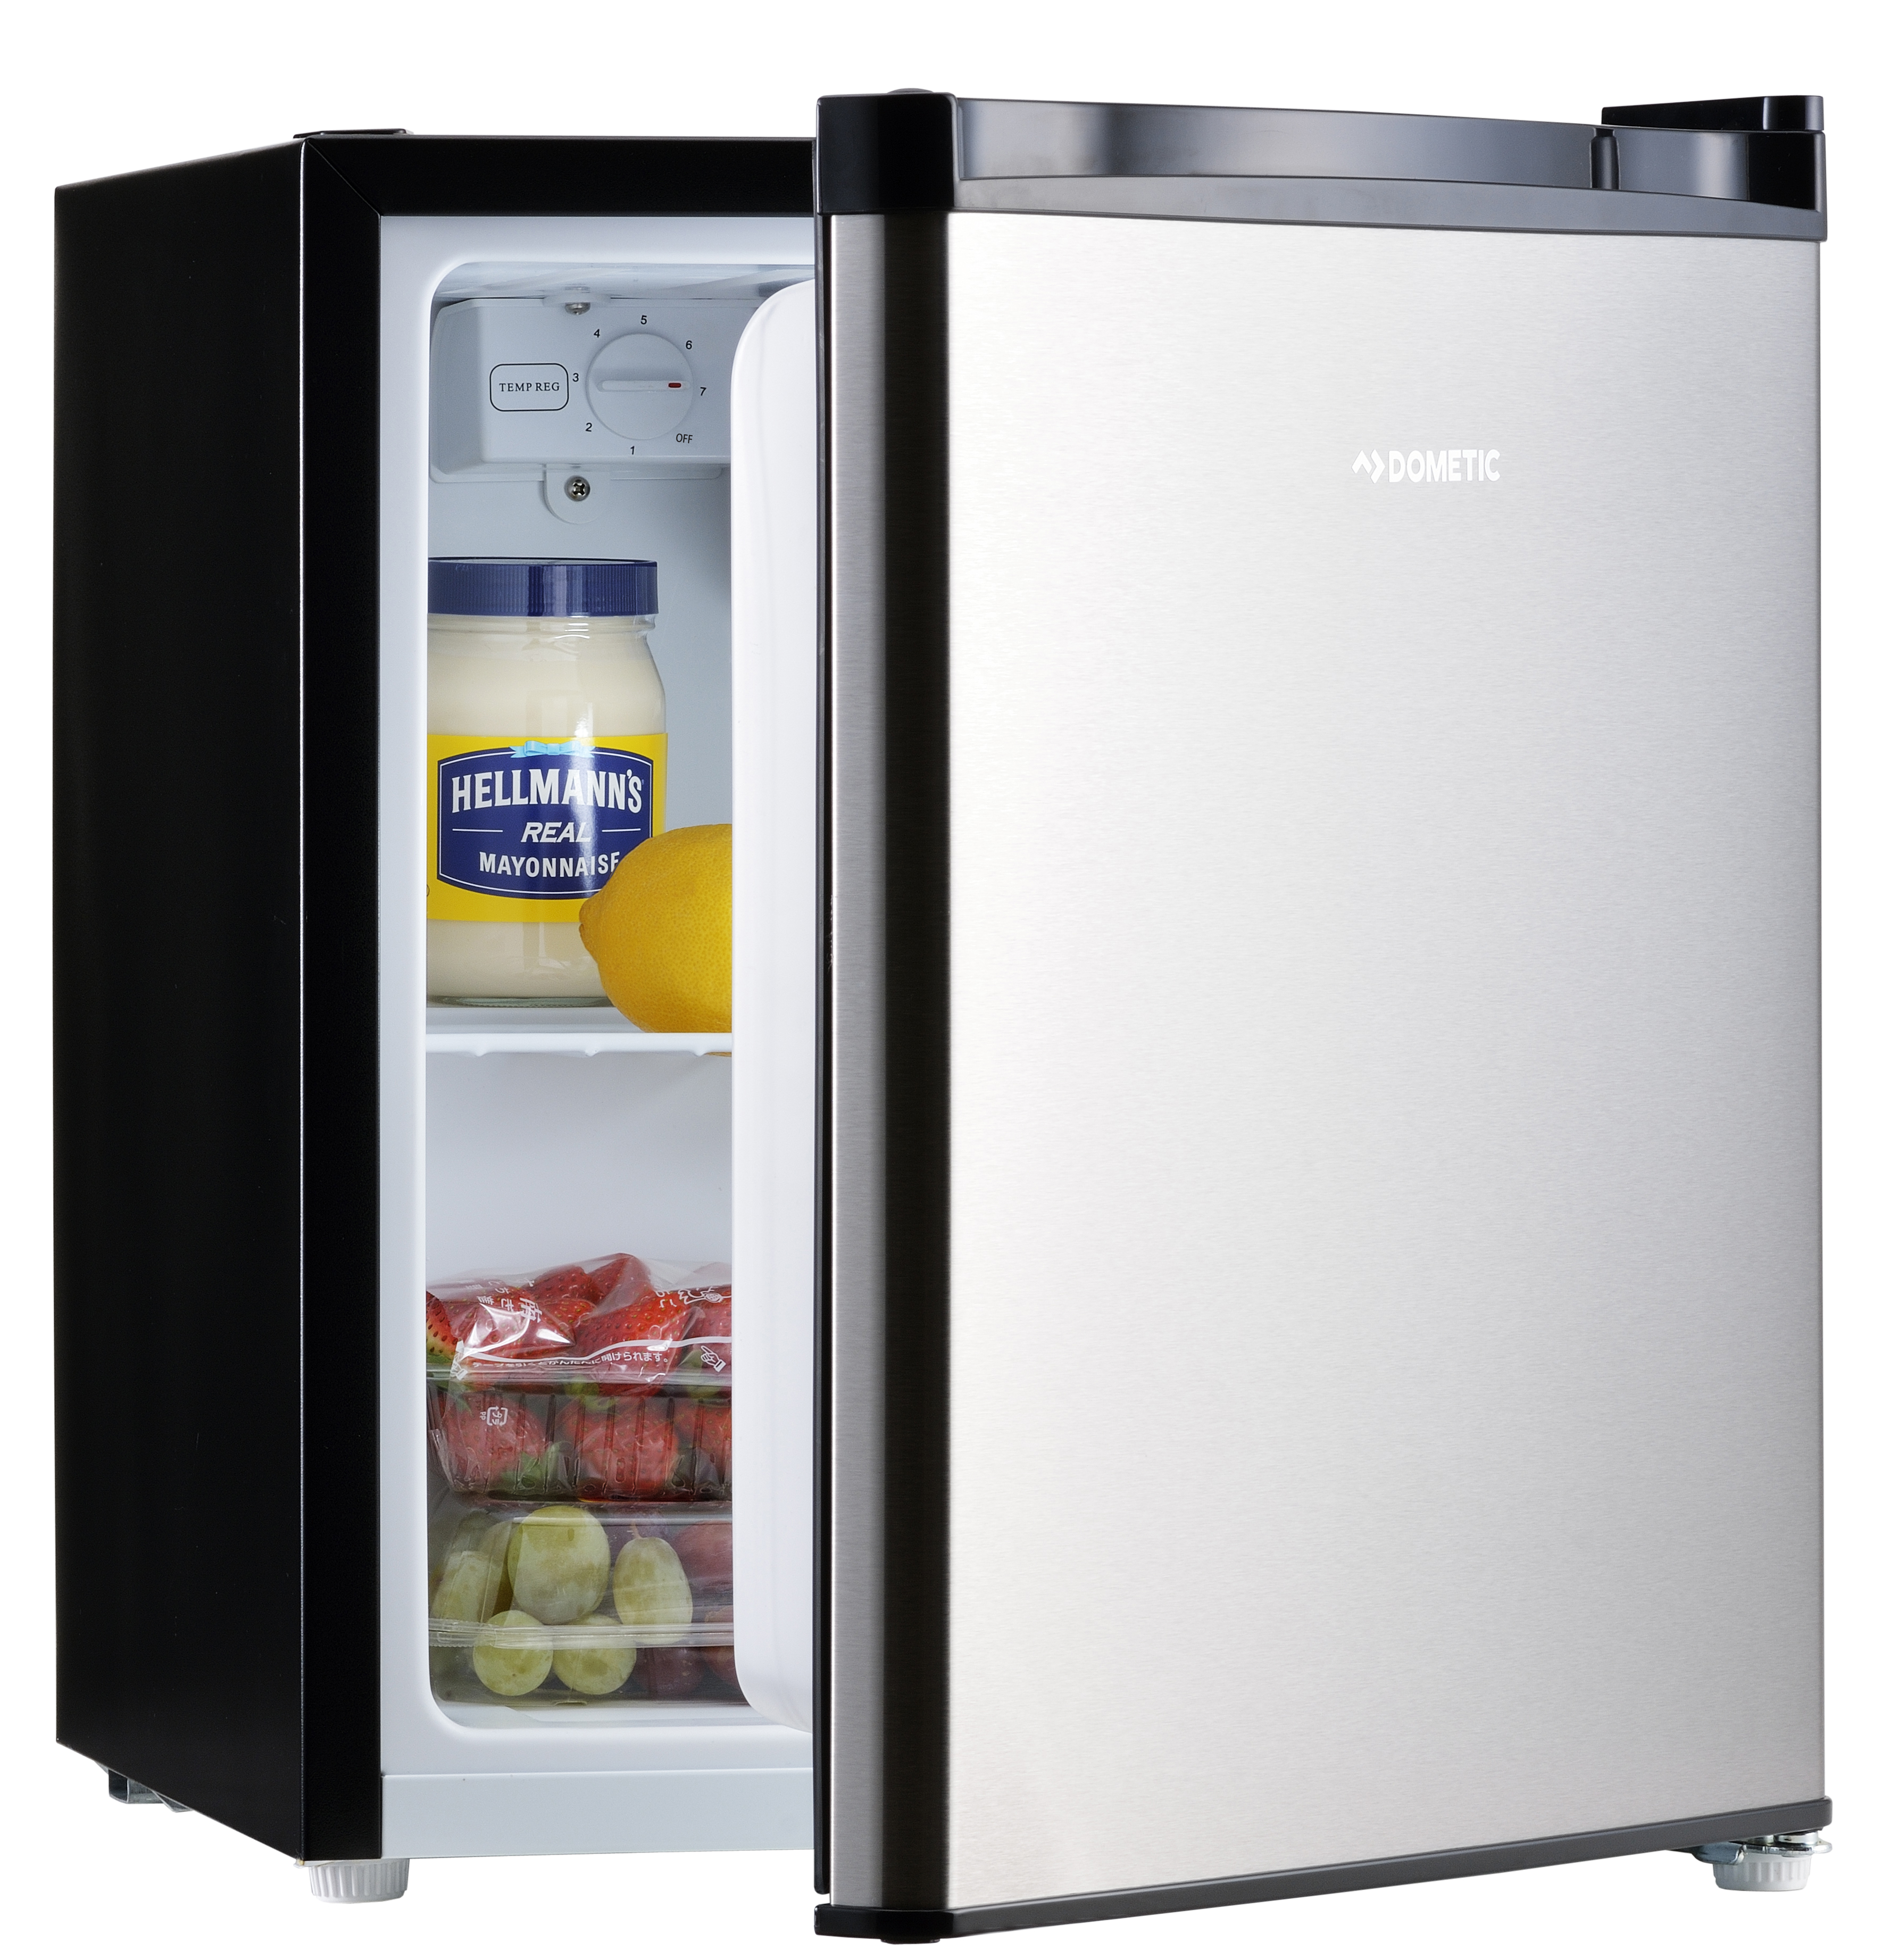 シンプル そしてスタイリッシュ 日常が美しくなる冷蔵庫 Ds42発売開始 ドメティック株式会社のプレスリリース